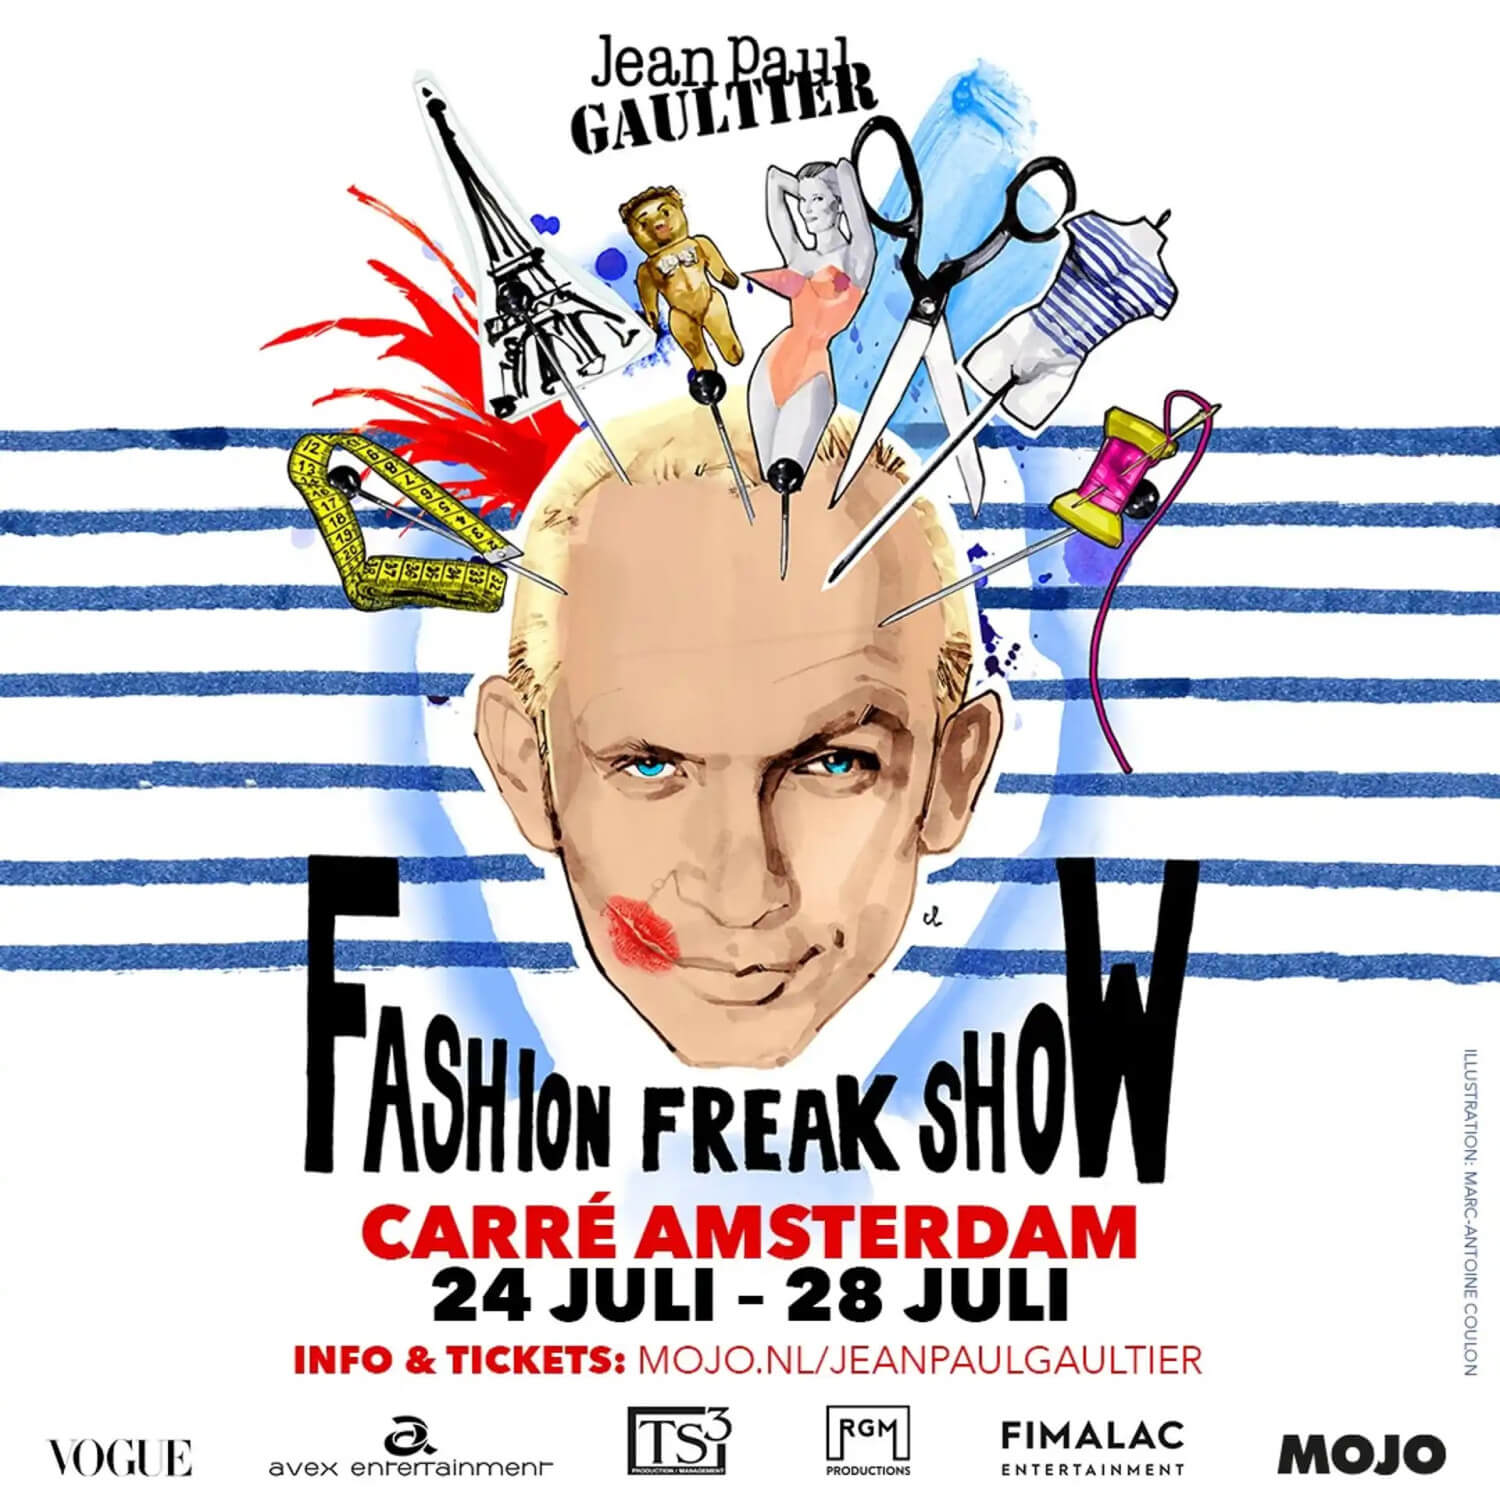 Jean Paul Gaultier Fashion Freak Show Carre